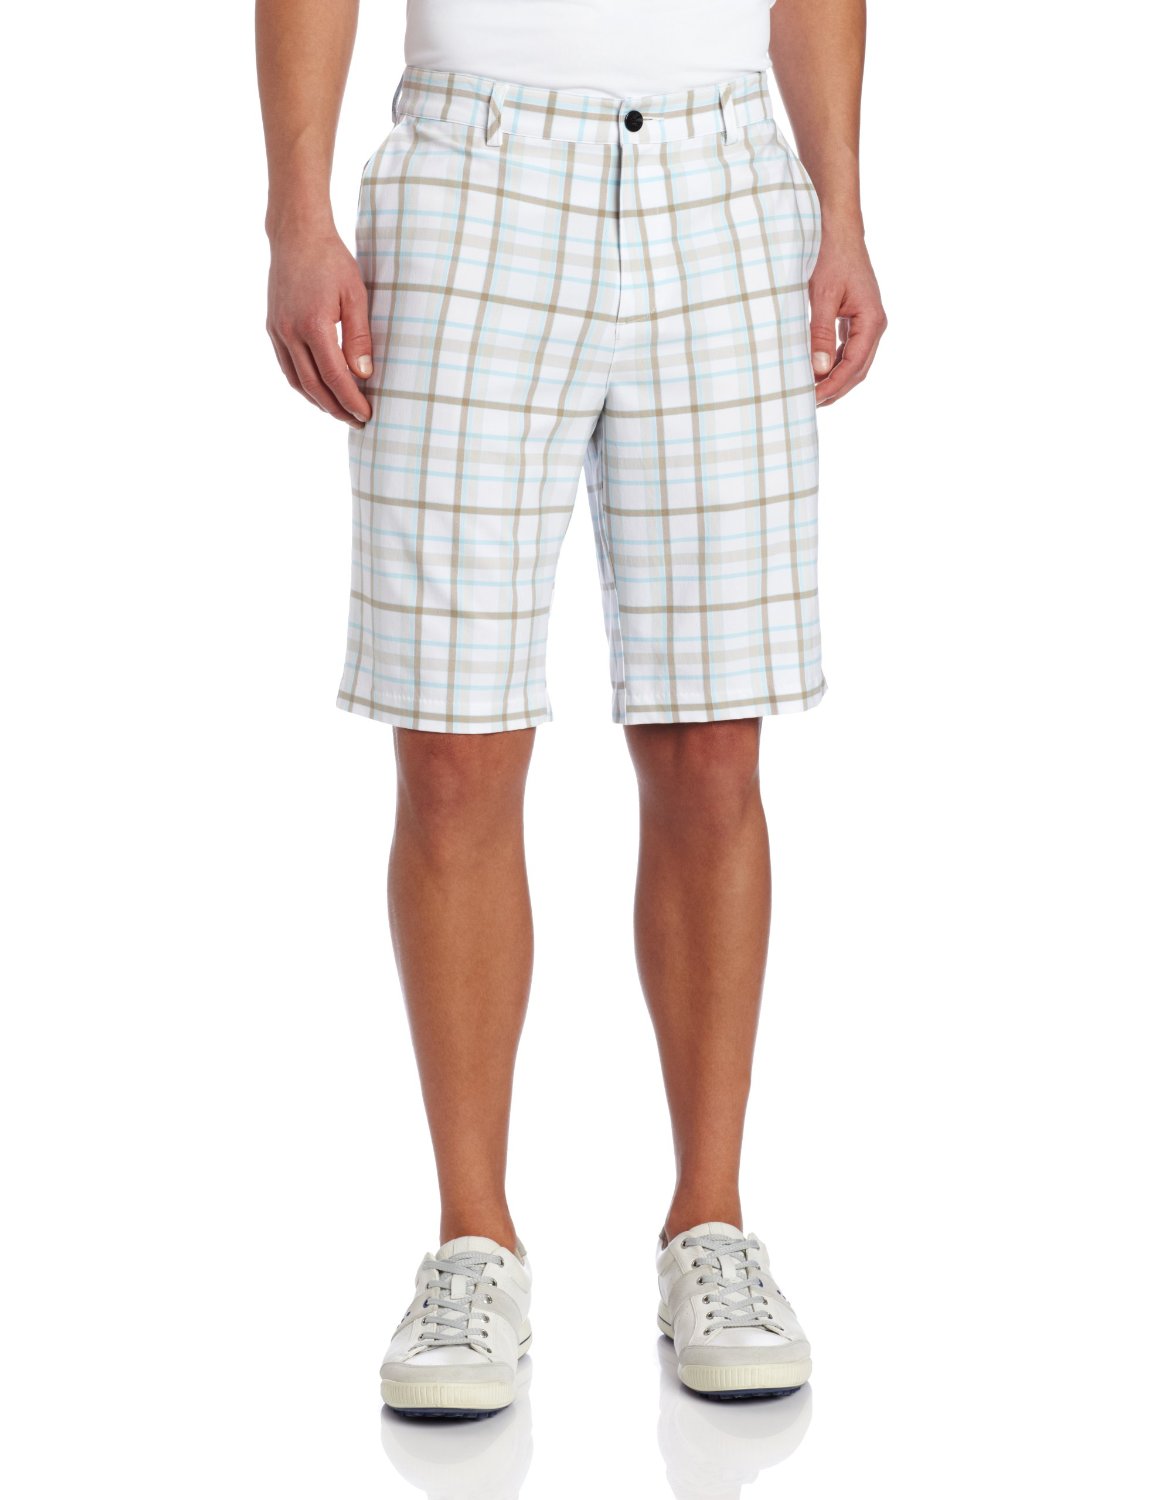 Adidas Mens Climalite Fashion Plaid Golf Shorts